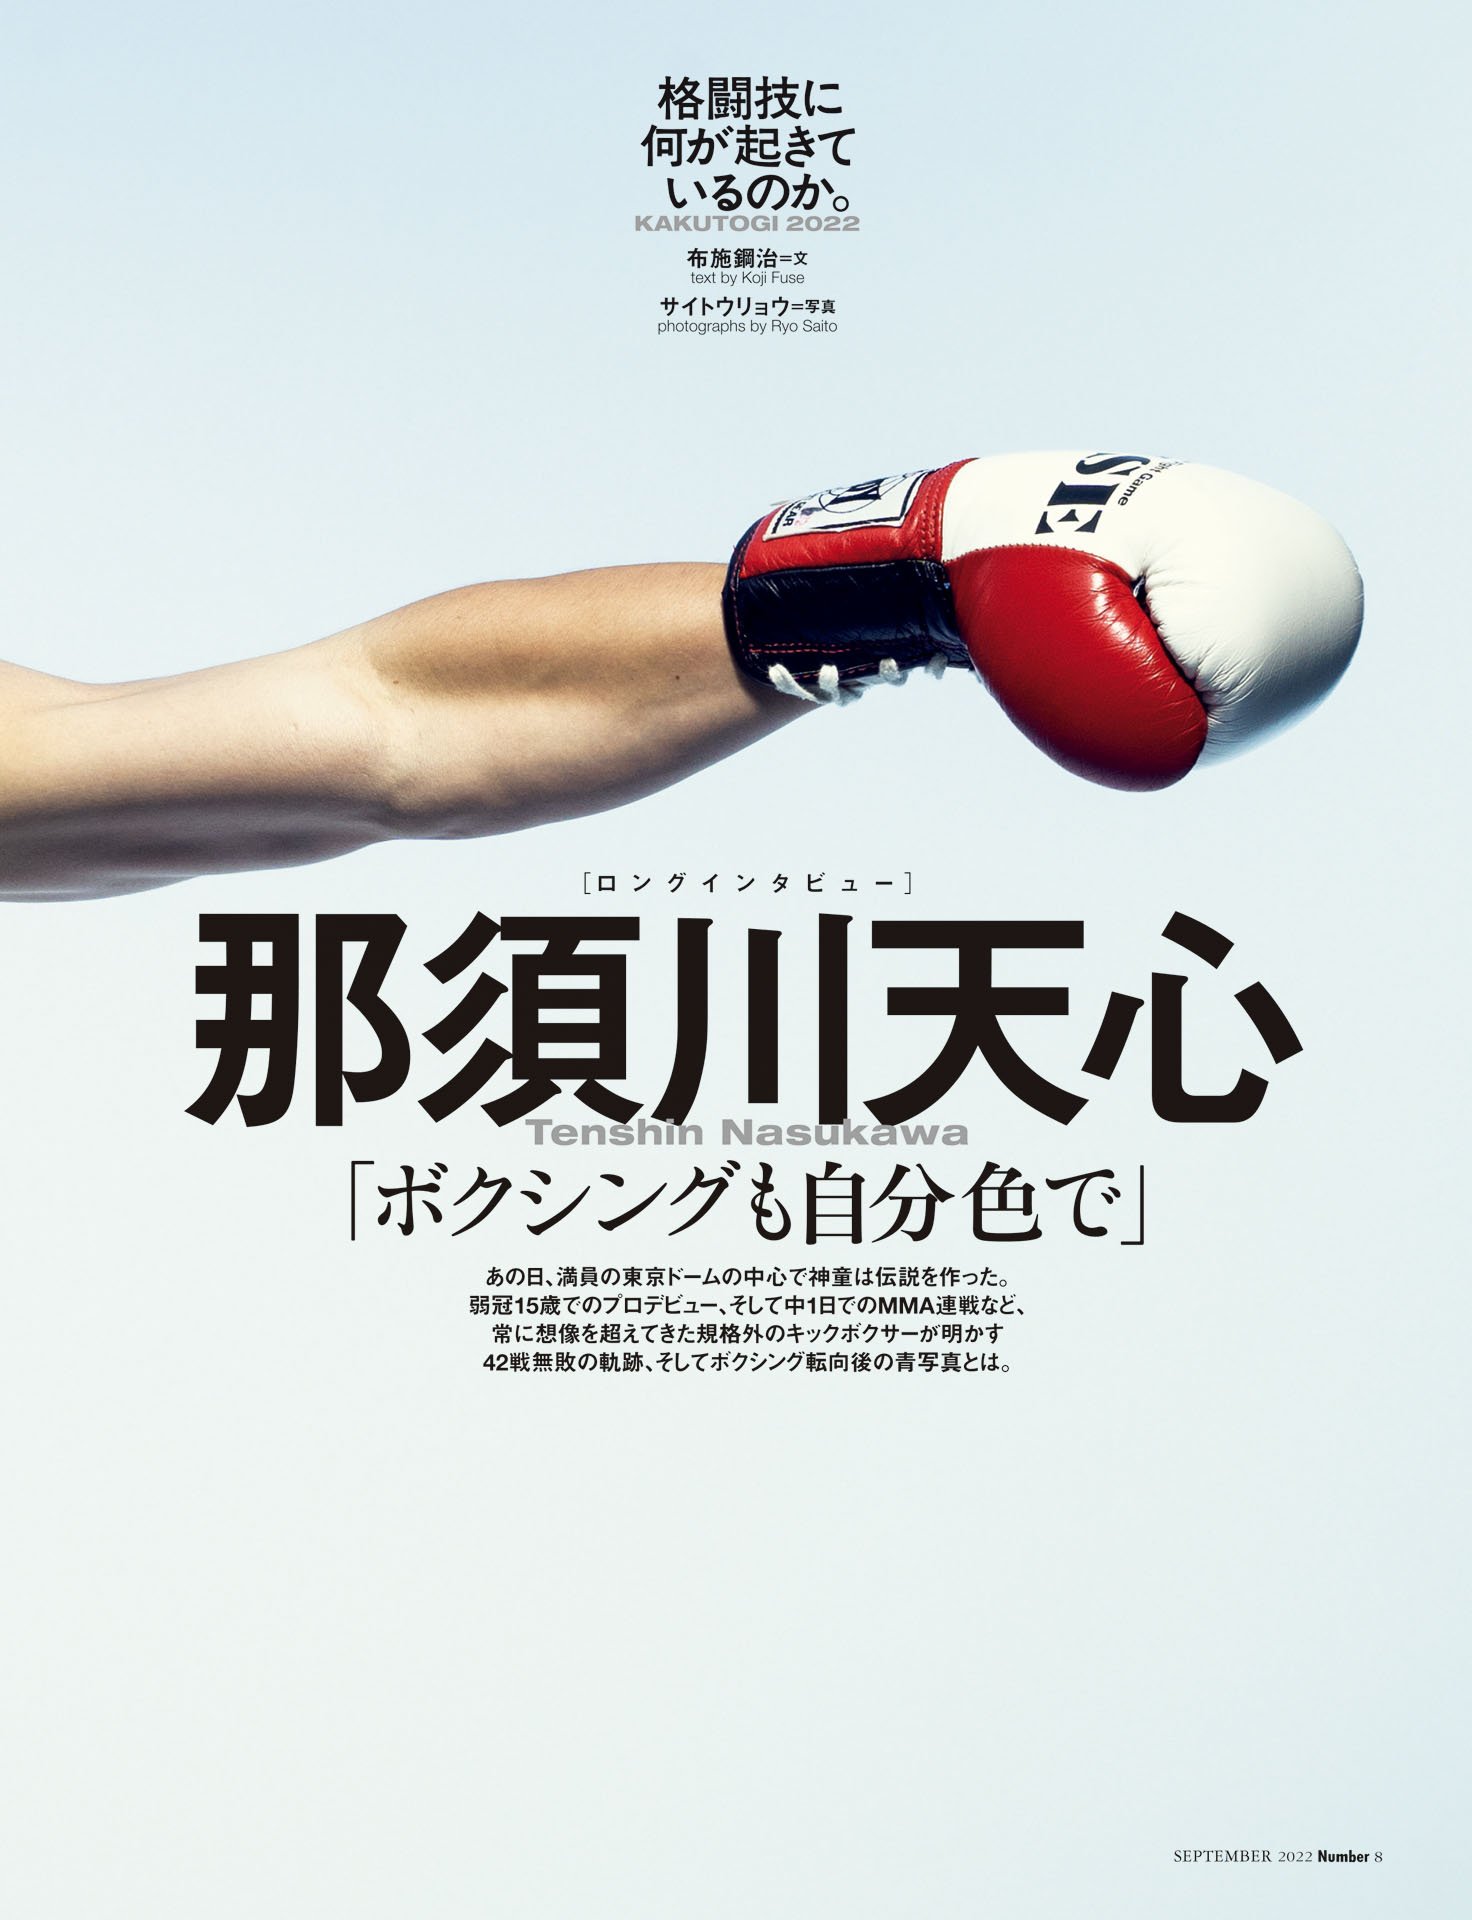 那須川天心「ボクシングも自分色で」